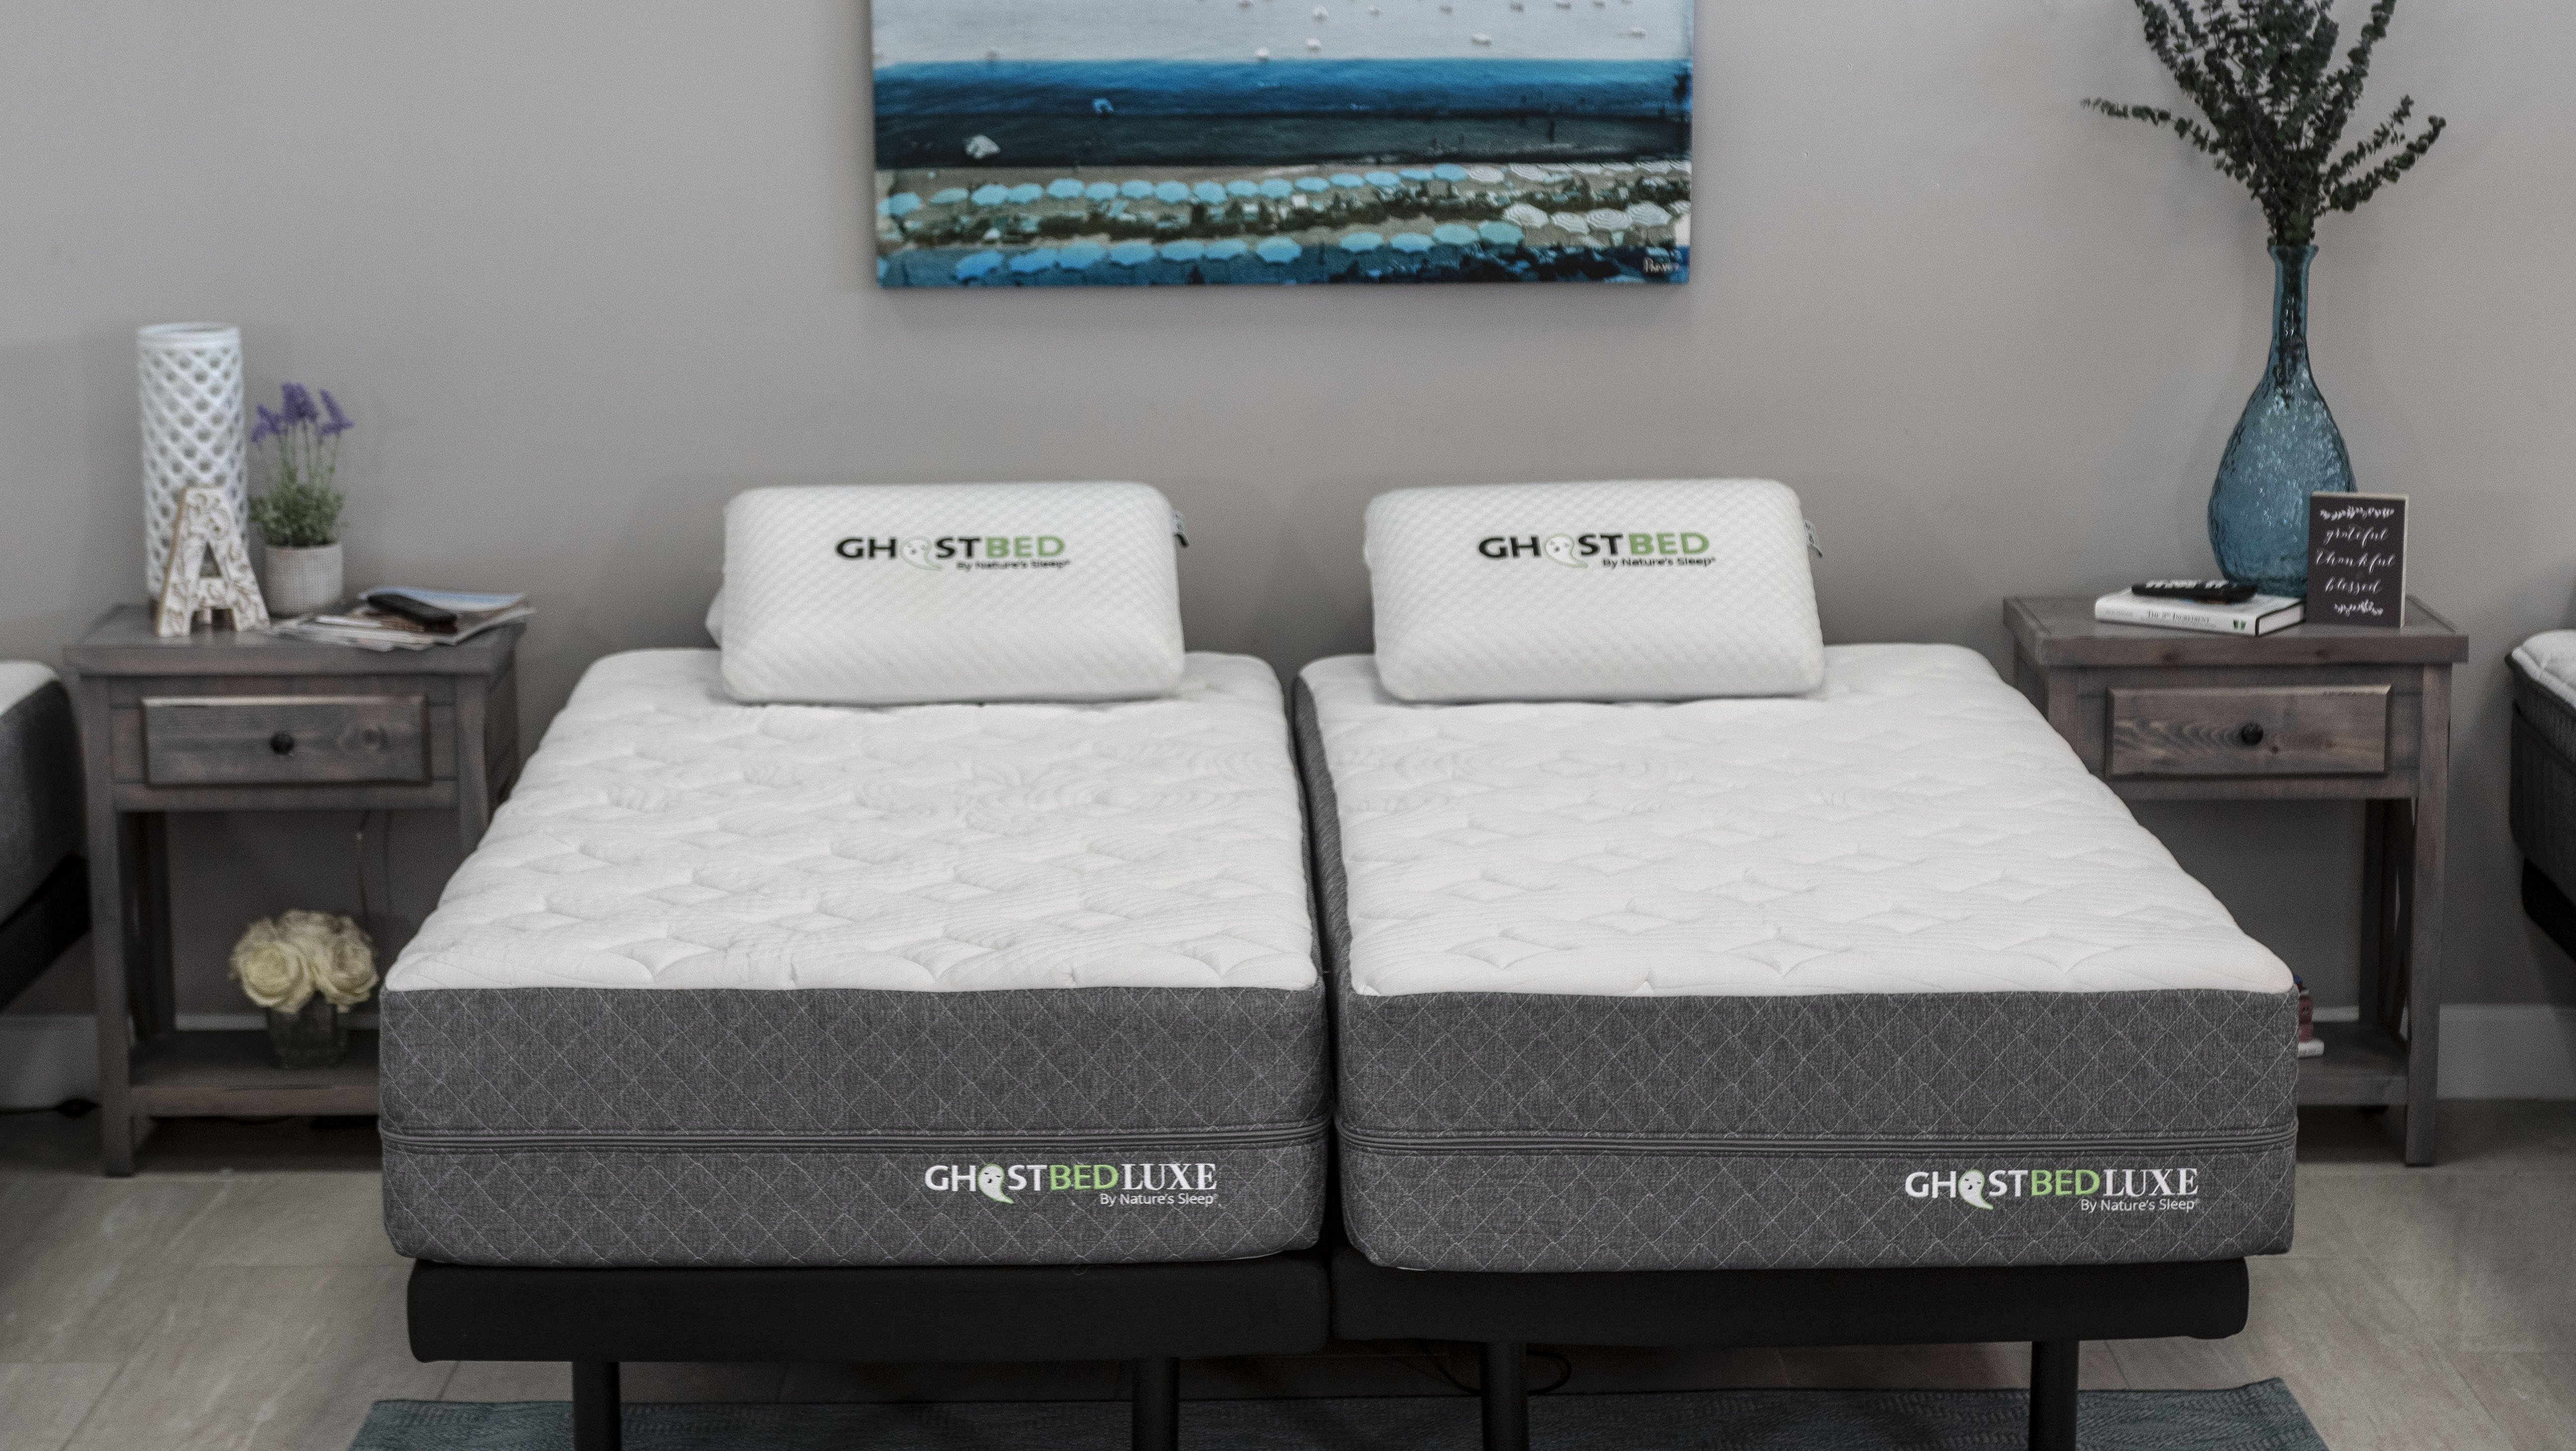 split king mattress for adjustable beds